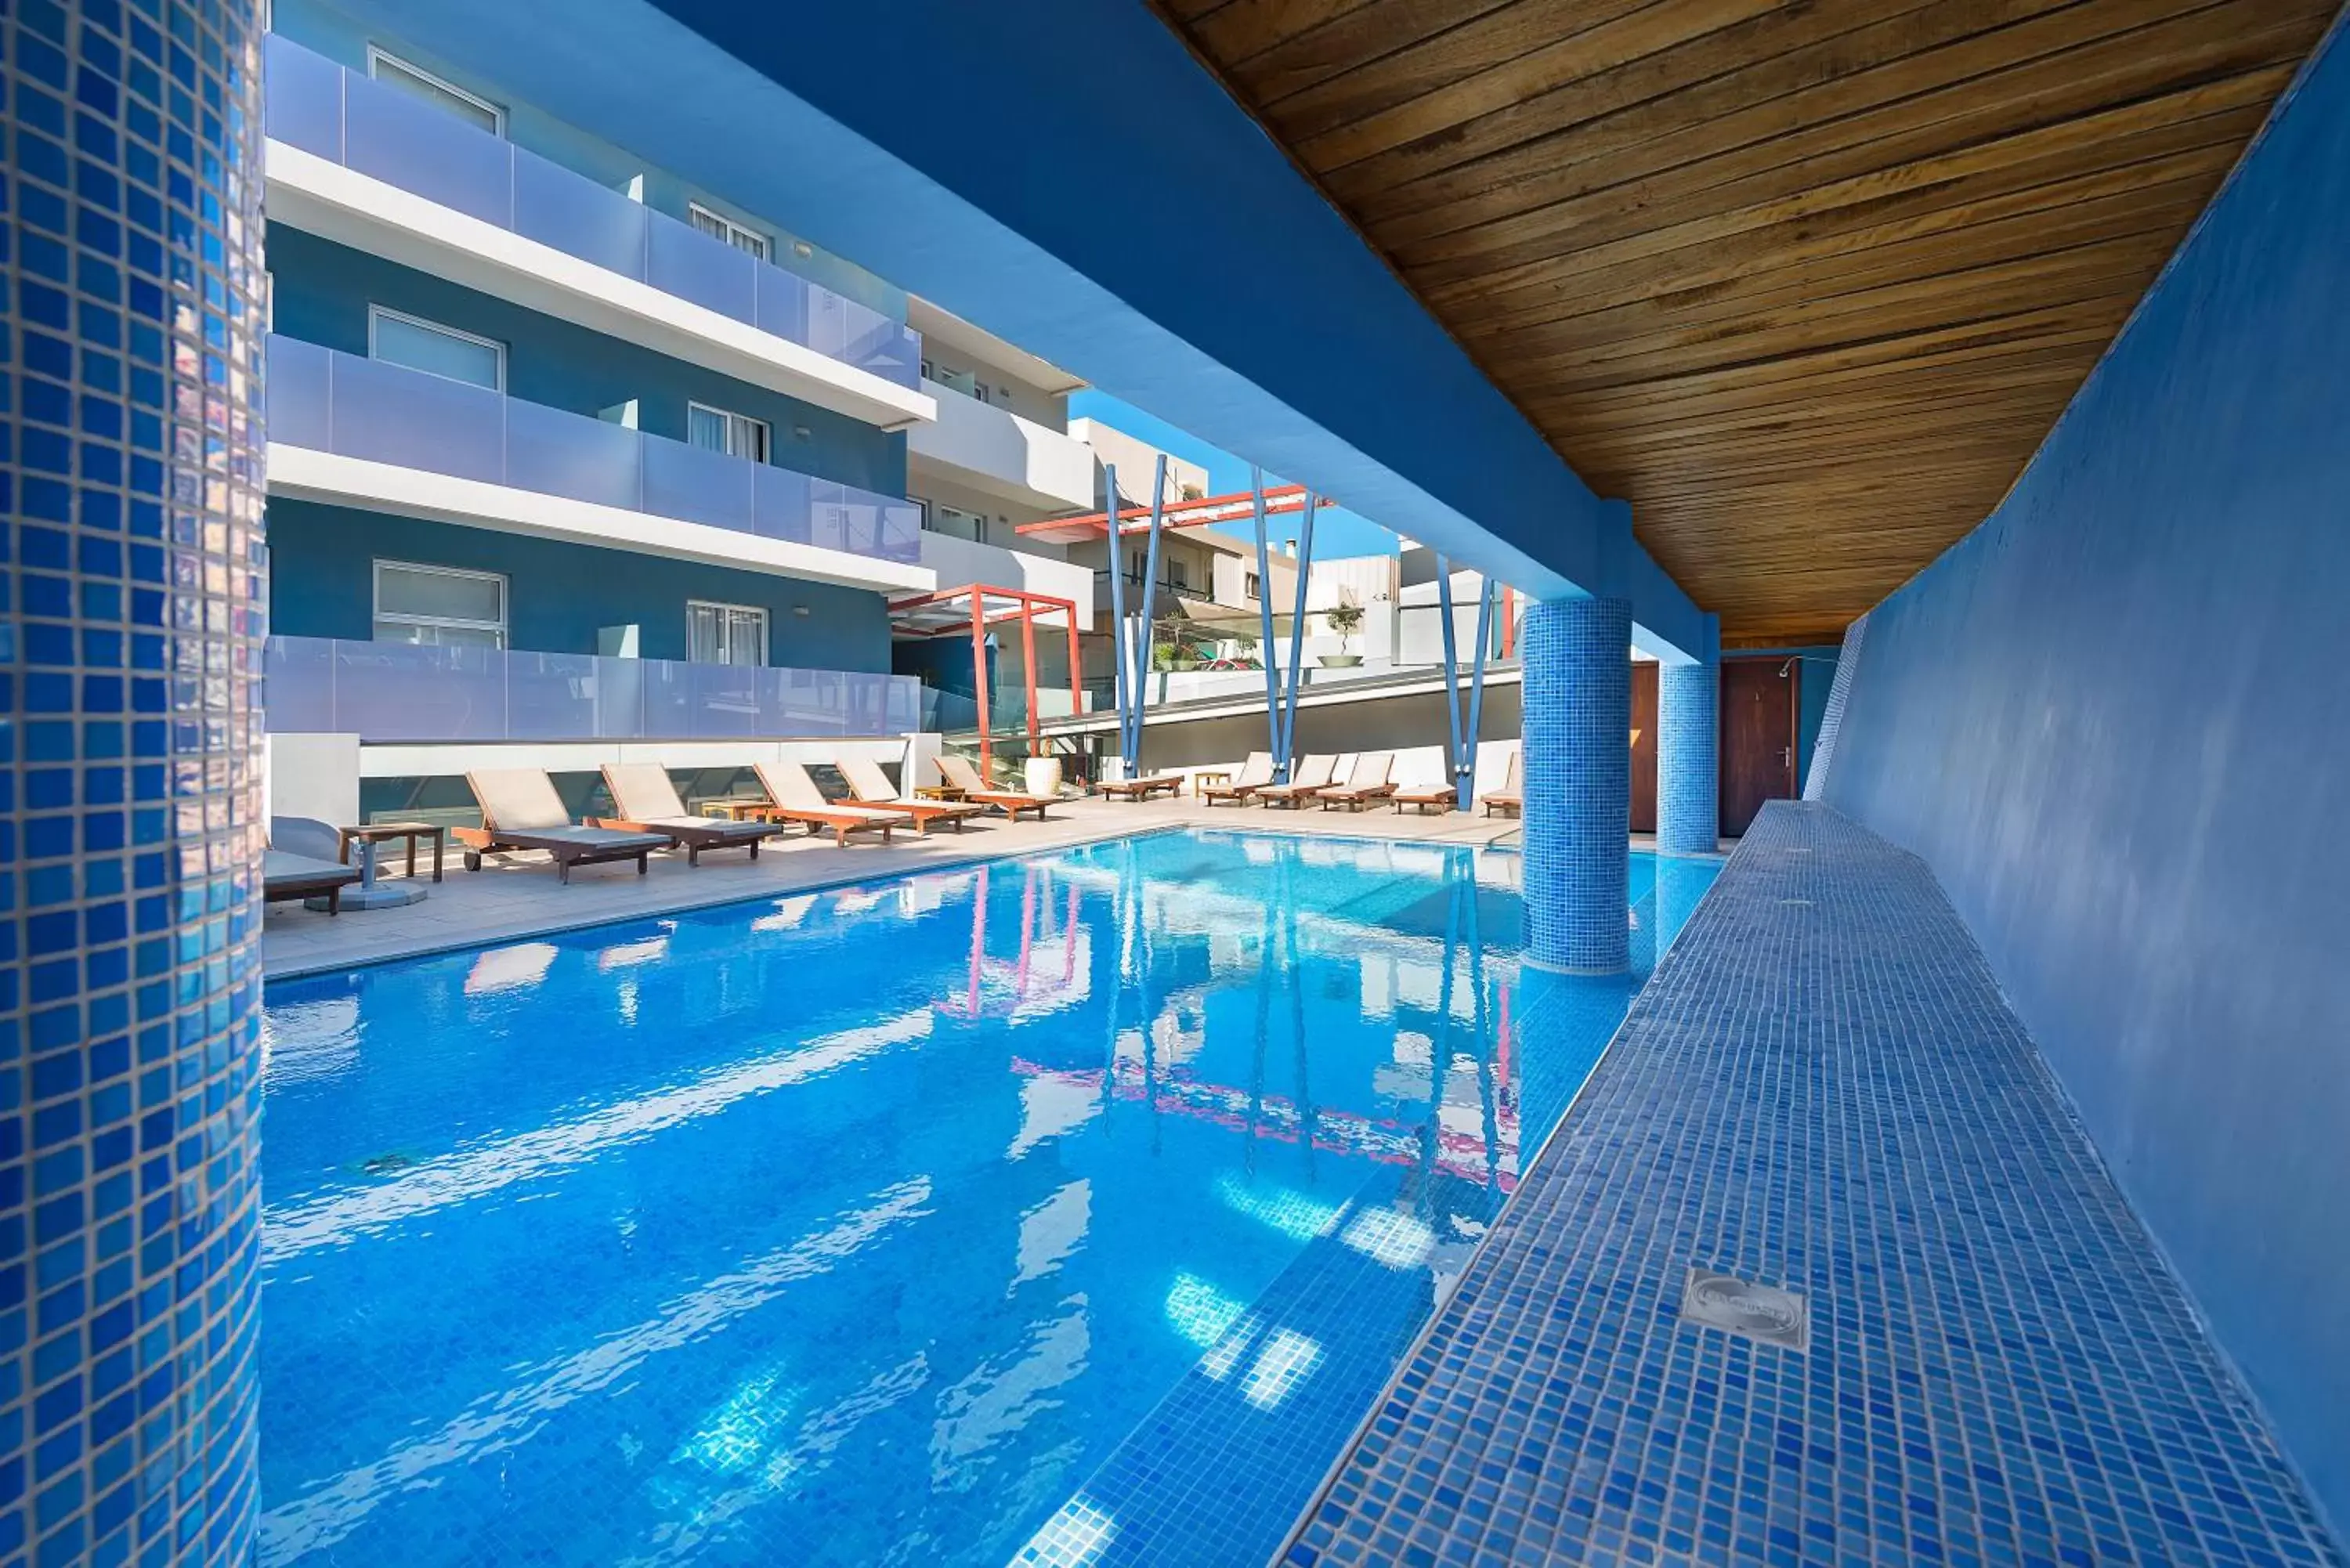 Swimming Pool in Semiramis City Hotel